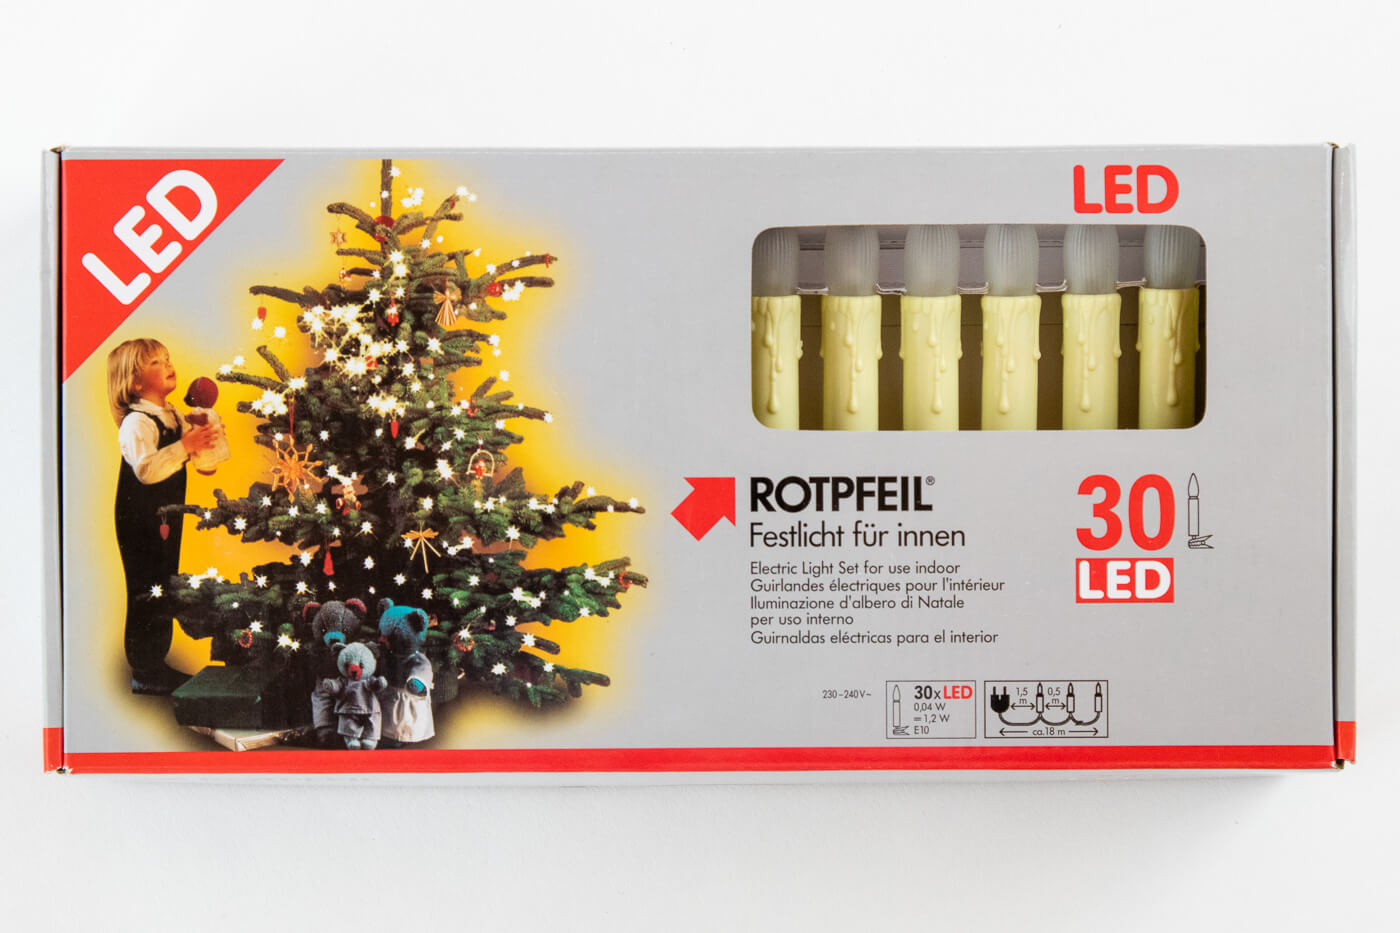 LED Topkerzen Lichterkette 30 flg Rotpfeil 9703005500